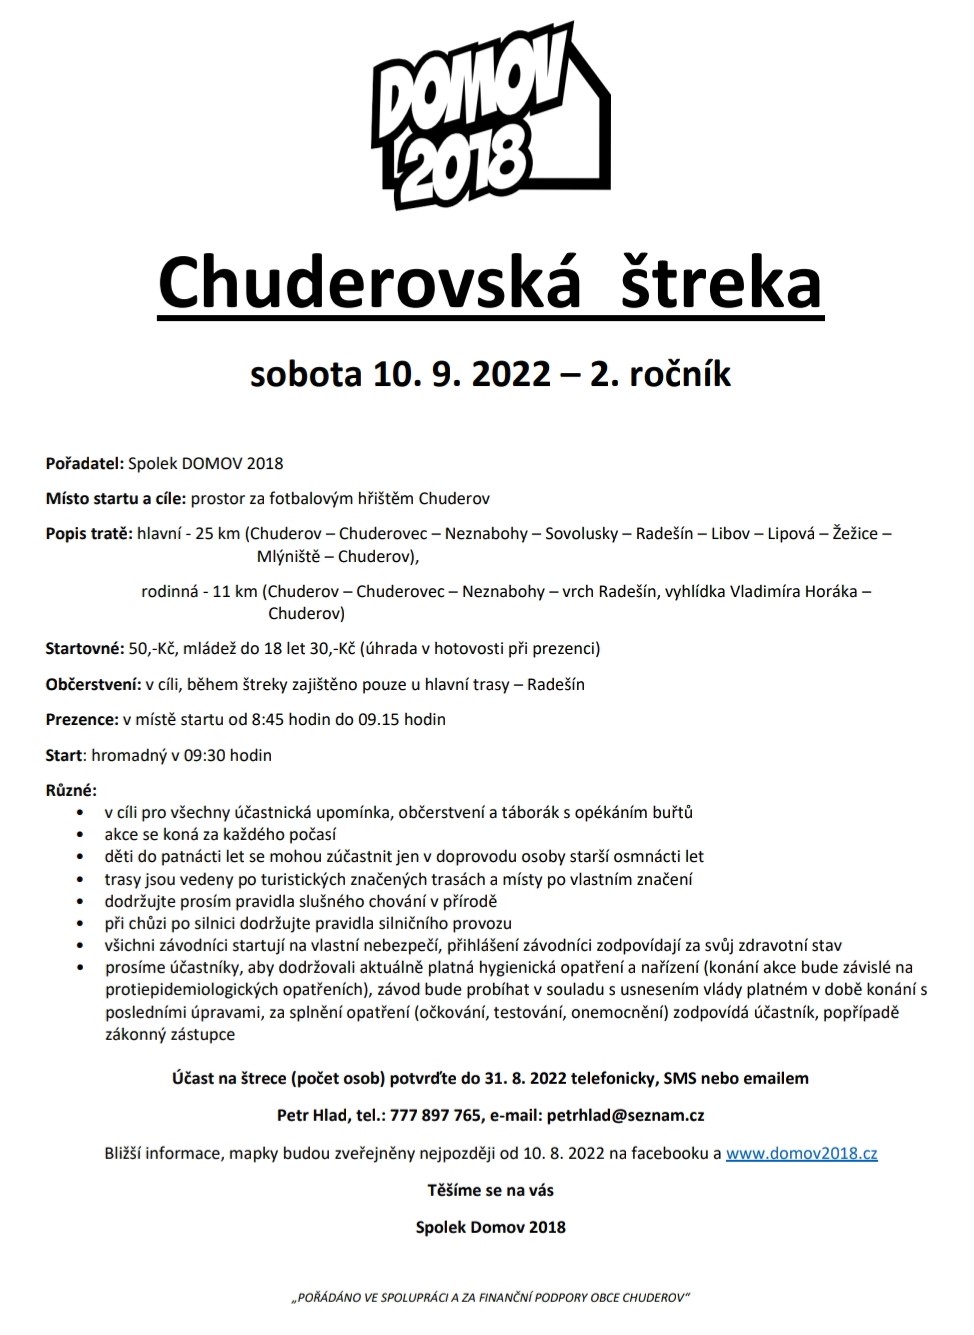 Chuderovská štreka 2. ročník – 2022